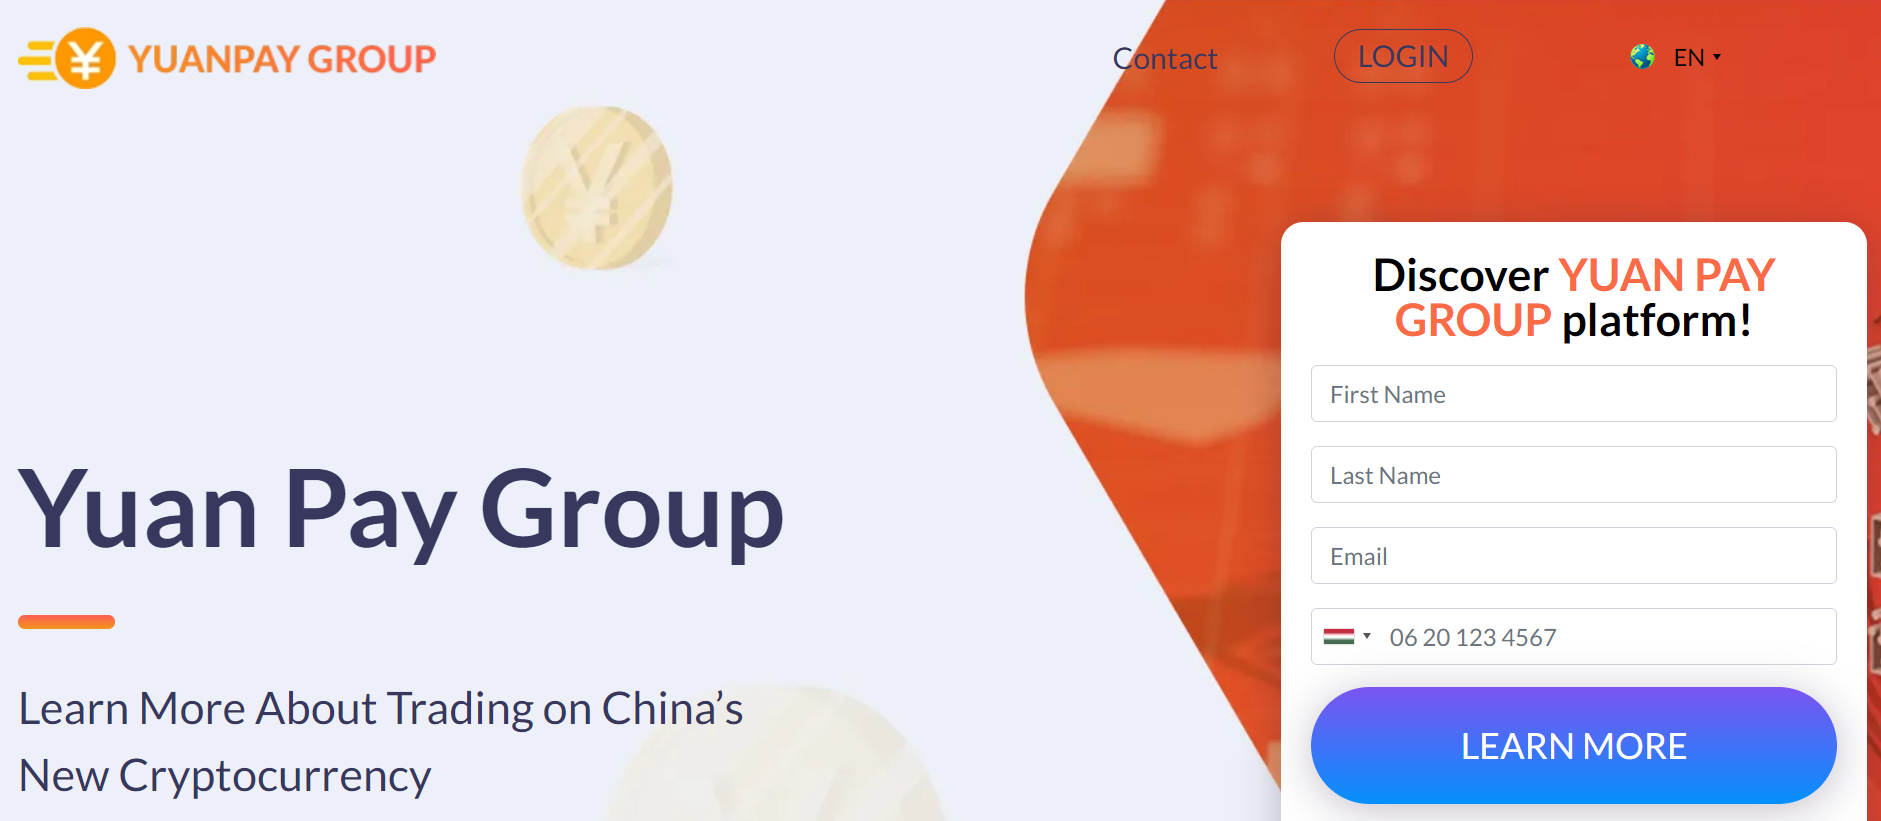 Yuan Pay Group regisztráció